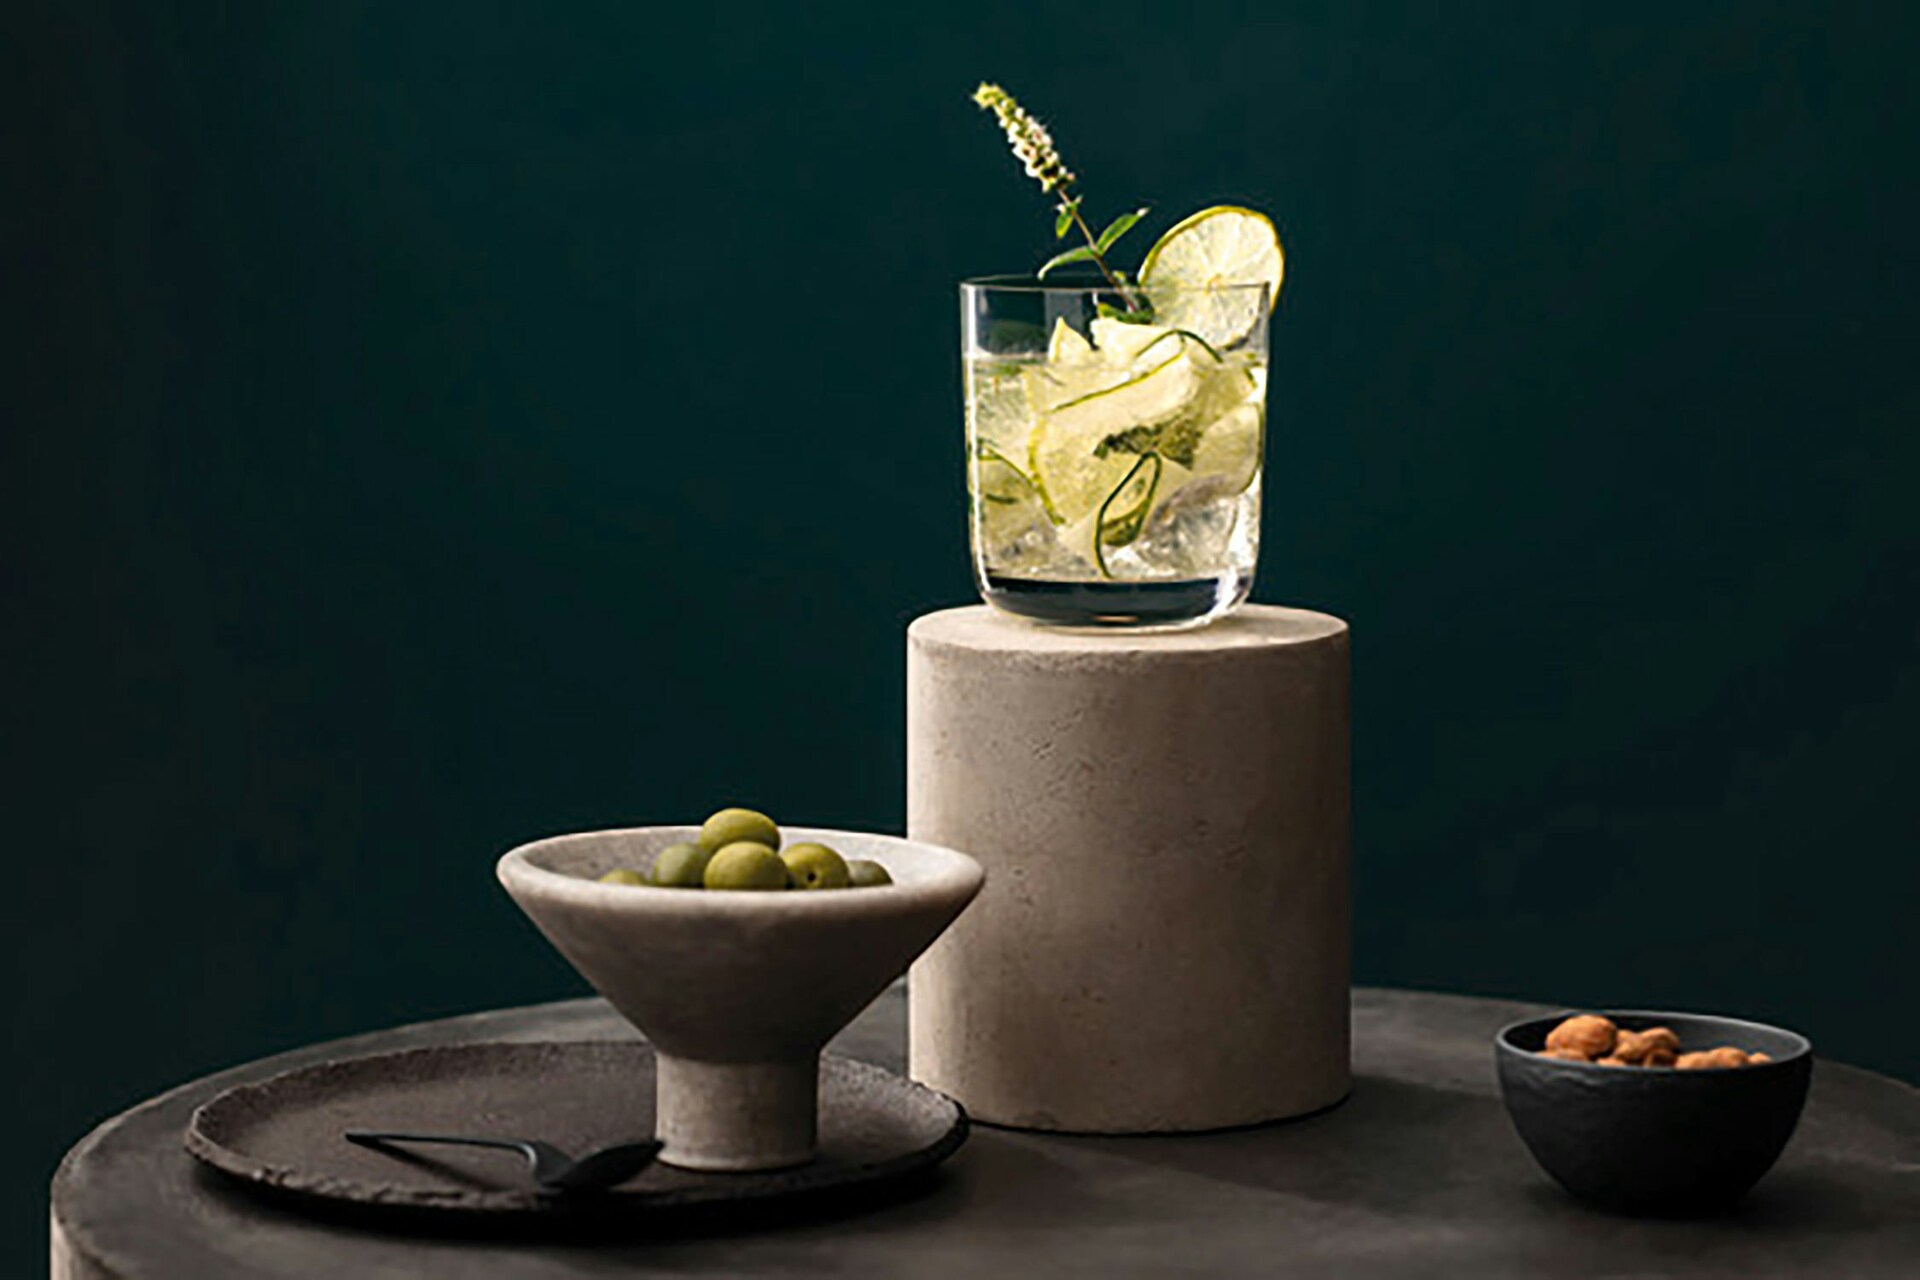 La Divina Champagne Glass 68 cl 4-pack - Villeroy & Boch @ RoyalDesign